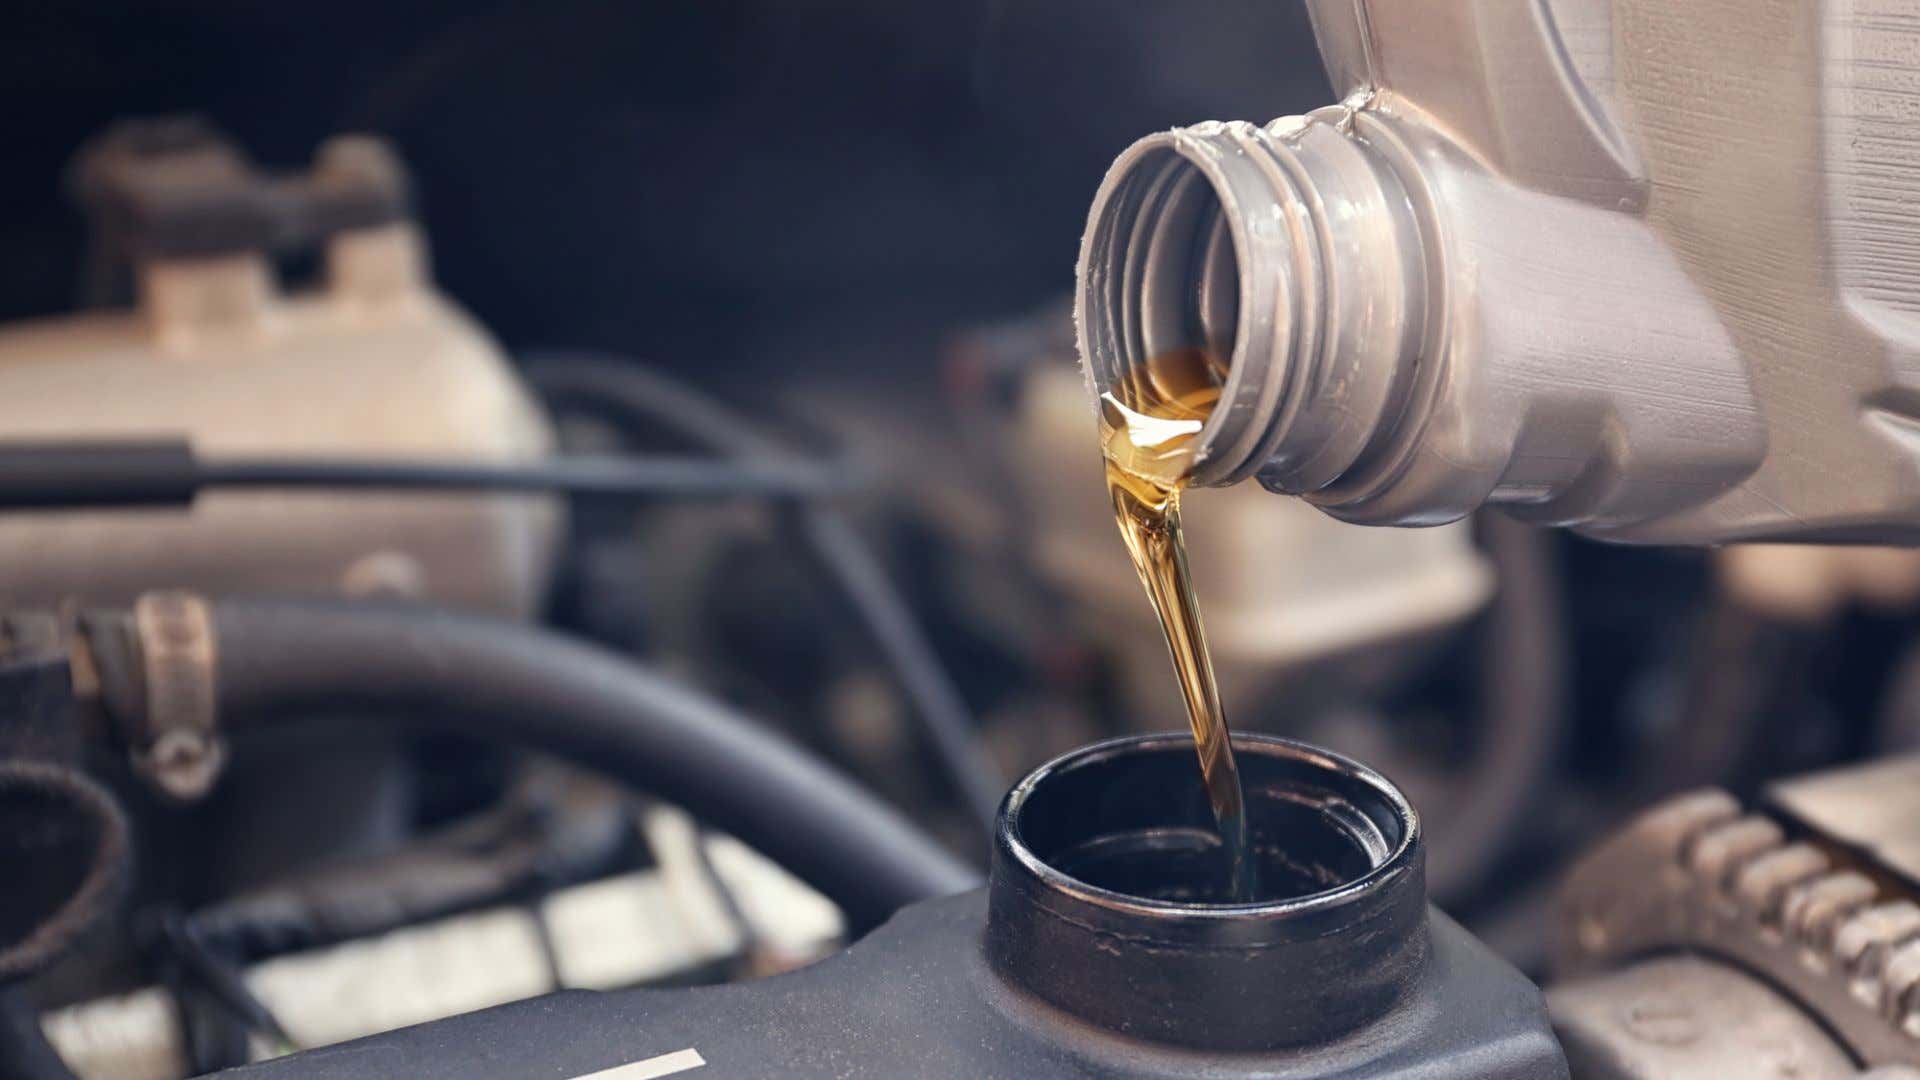 新的合成油被注入发动机。